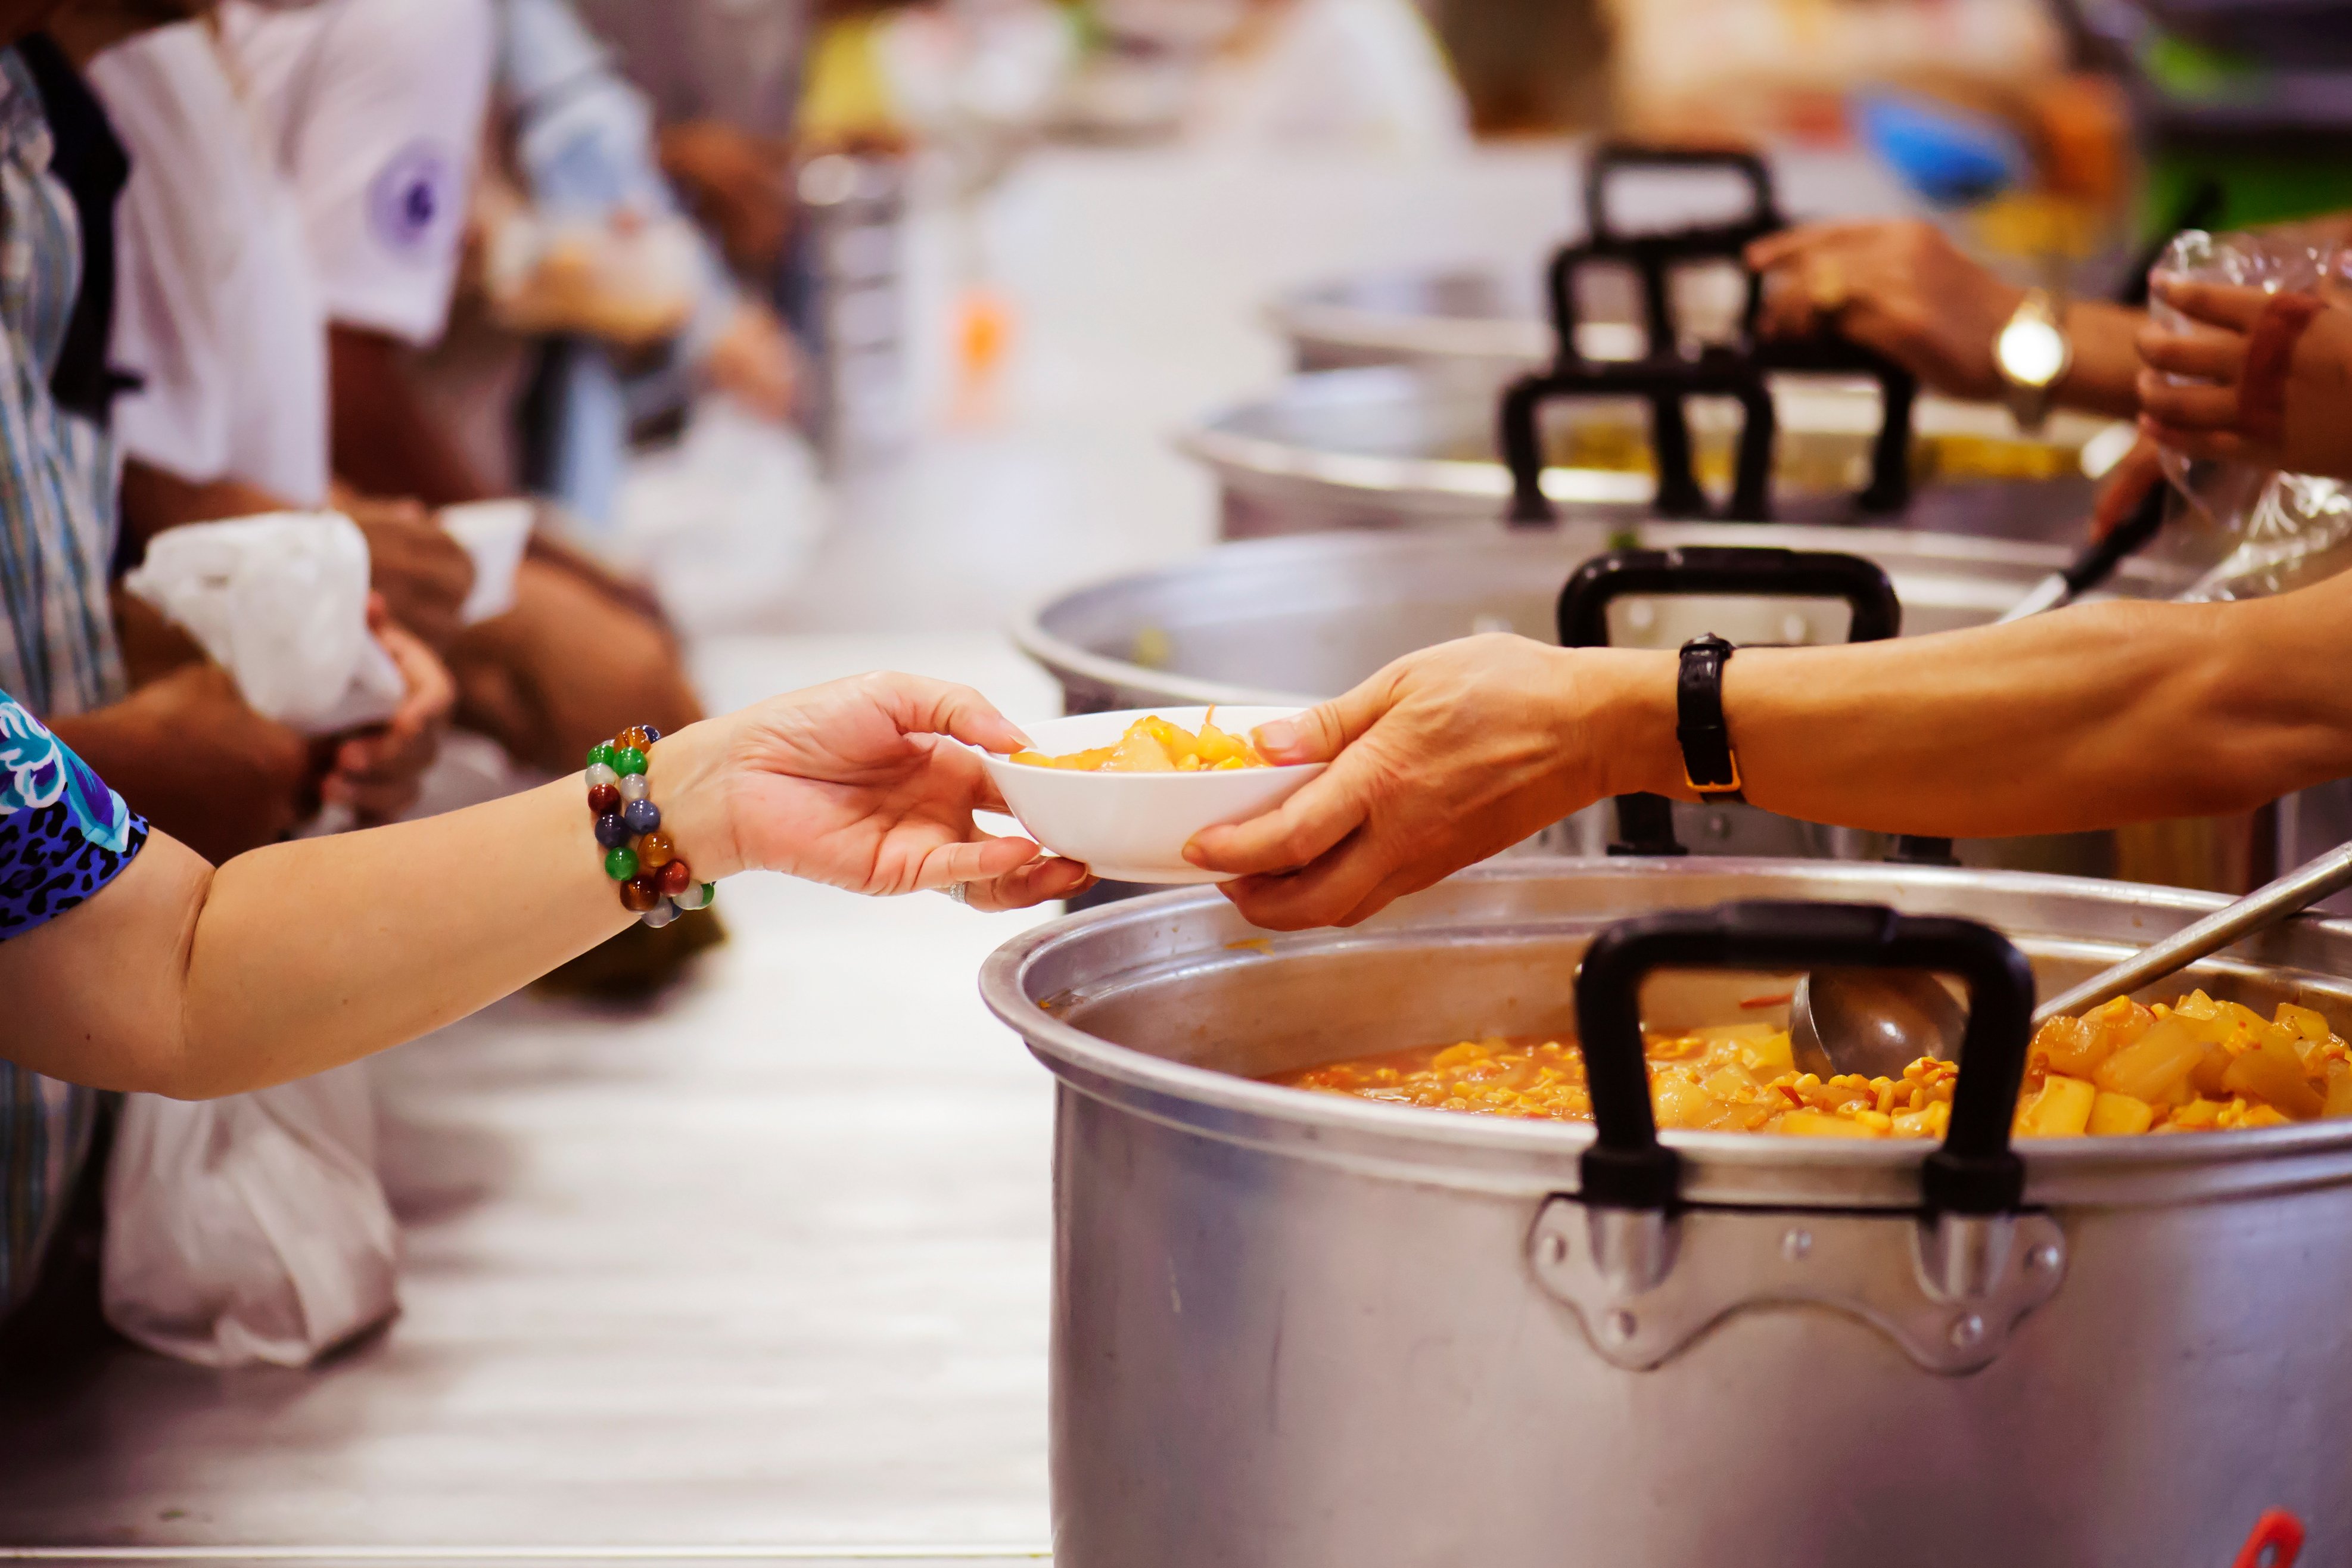 Voluntarios alimentando a los necesitados. | Foto: Shutterstock